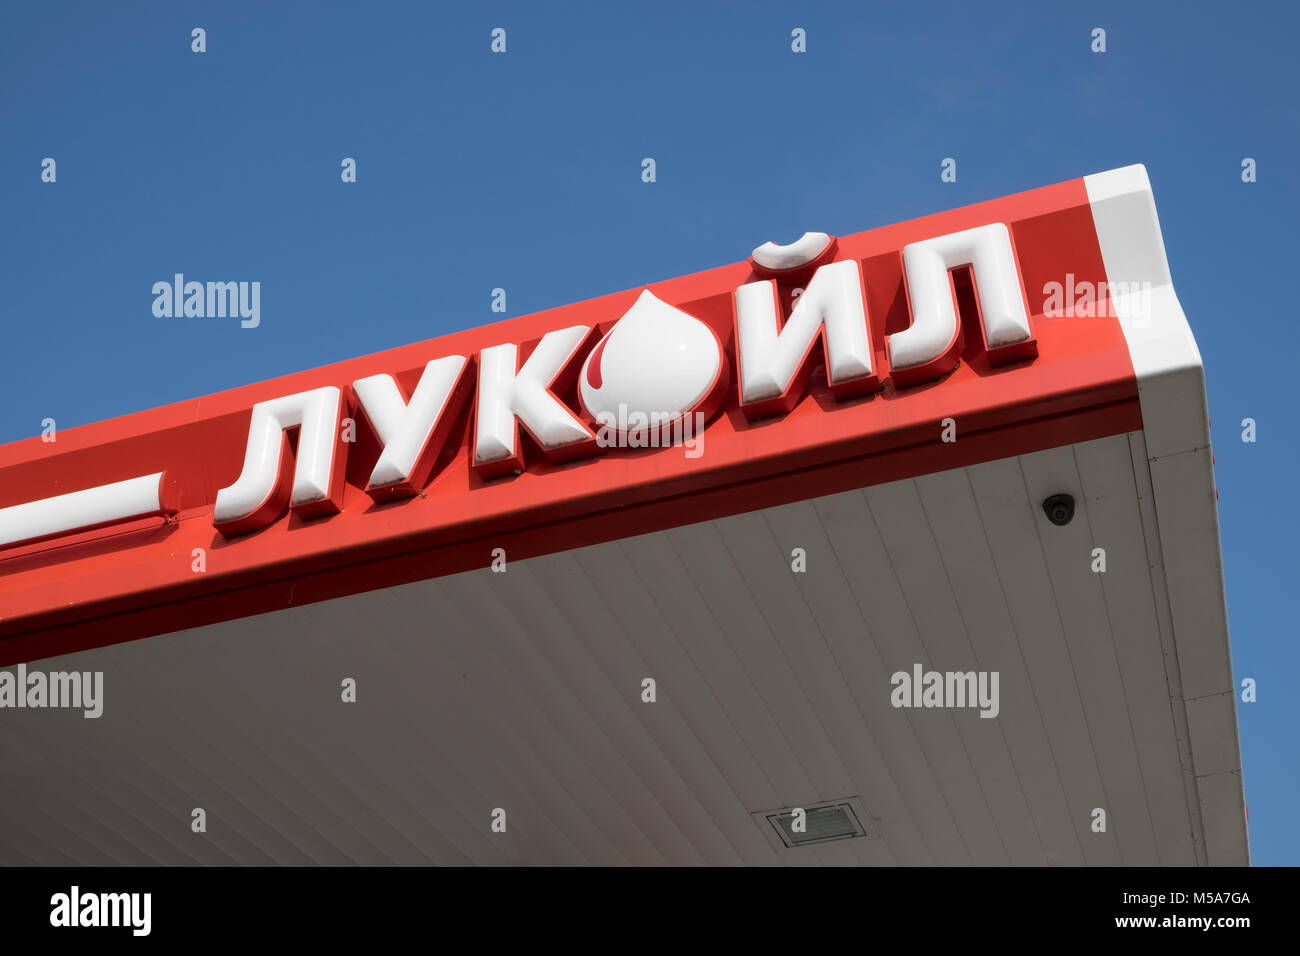 Russischen Ölriesen, Lukoil signage auf einer der Tankstellen, Russland. Zeichen in kyrillischer Schrift. Stockfoto